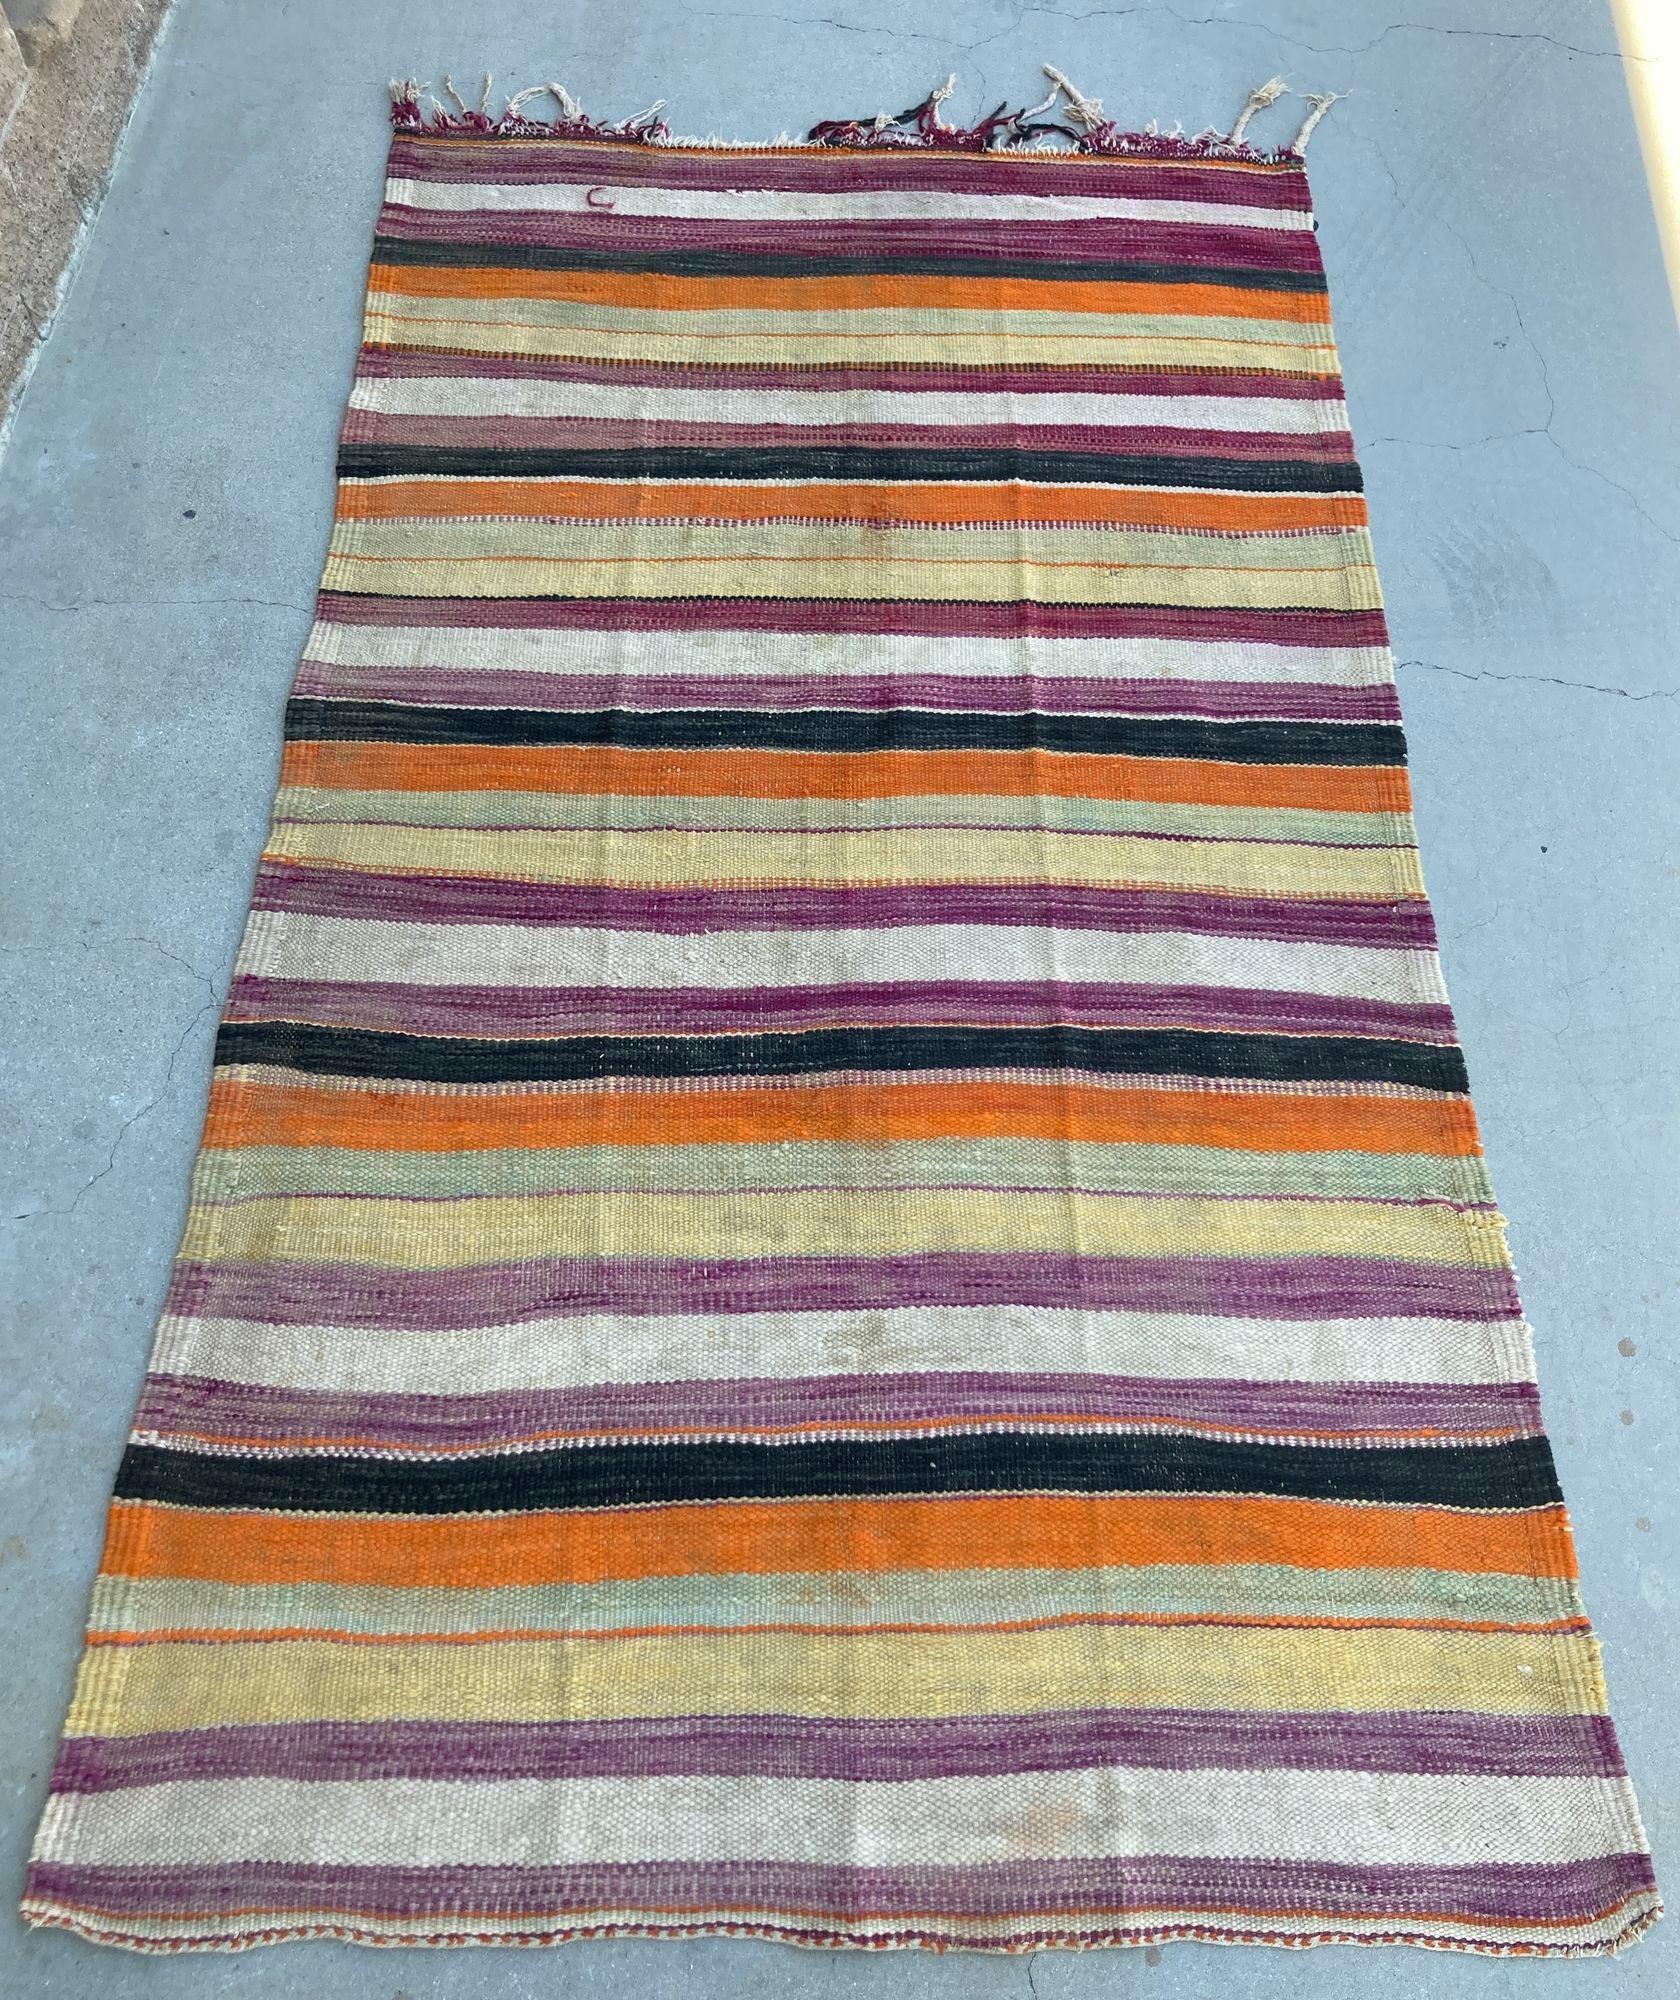 1960er Marokkanischer Stammesteppich, Handgewebter Nordafrikanischer Ethnischer Textilbodenbelag, Vintage Marokkanischer Flachgewebter Streifen Kilim Teppich. Handgefertigter, großformatiger marokkanischer Teppich im Vintage-Stil, der von